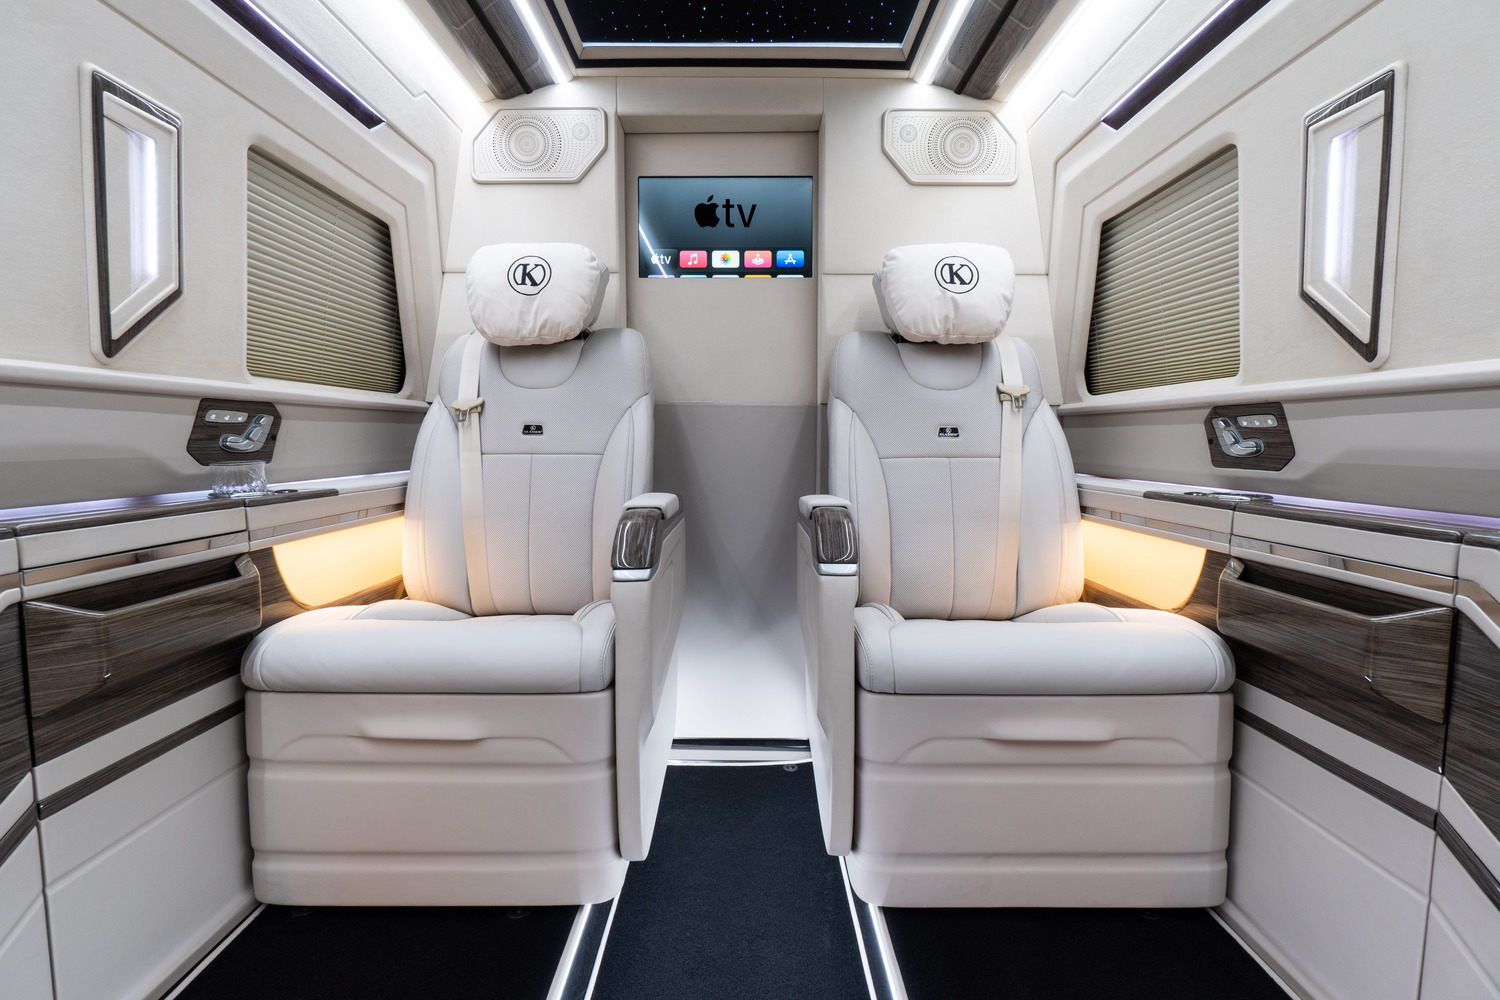 2024 Mercedes Sprinter VIP Luxury PRINCE VAN - Full Review